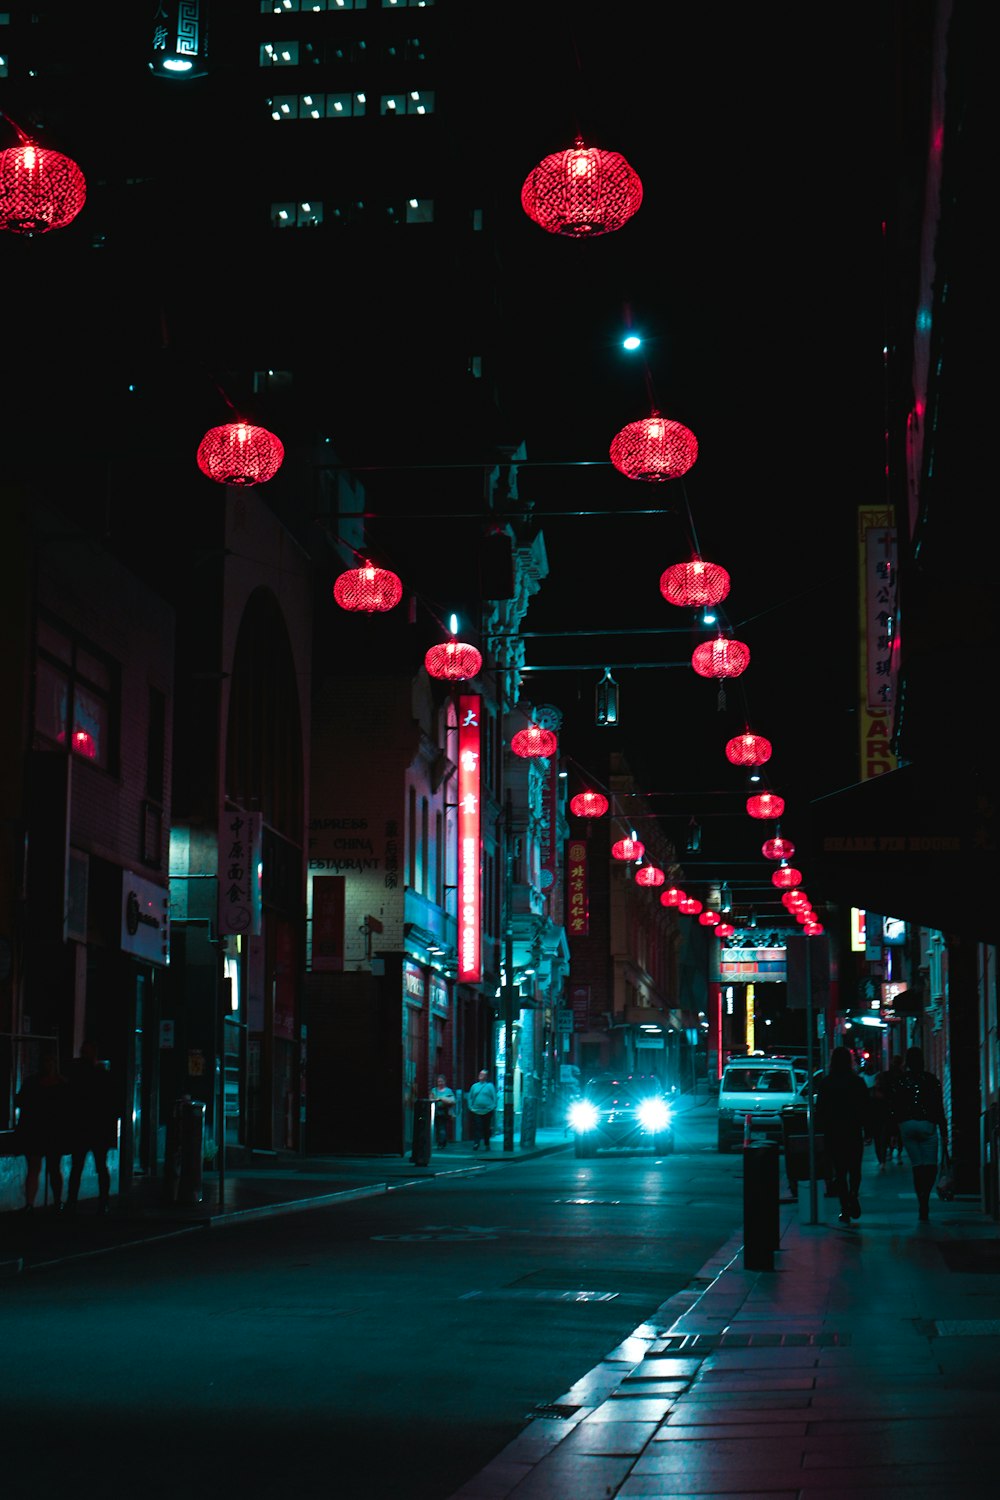 red lanterns on street during night time